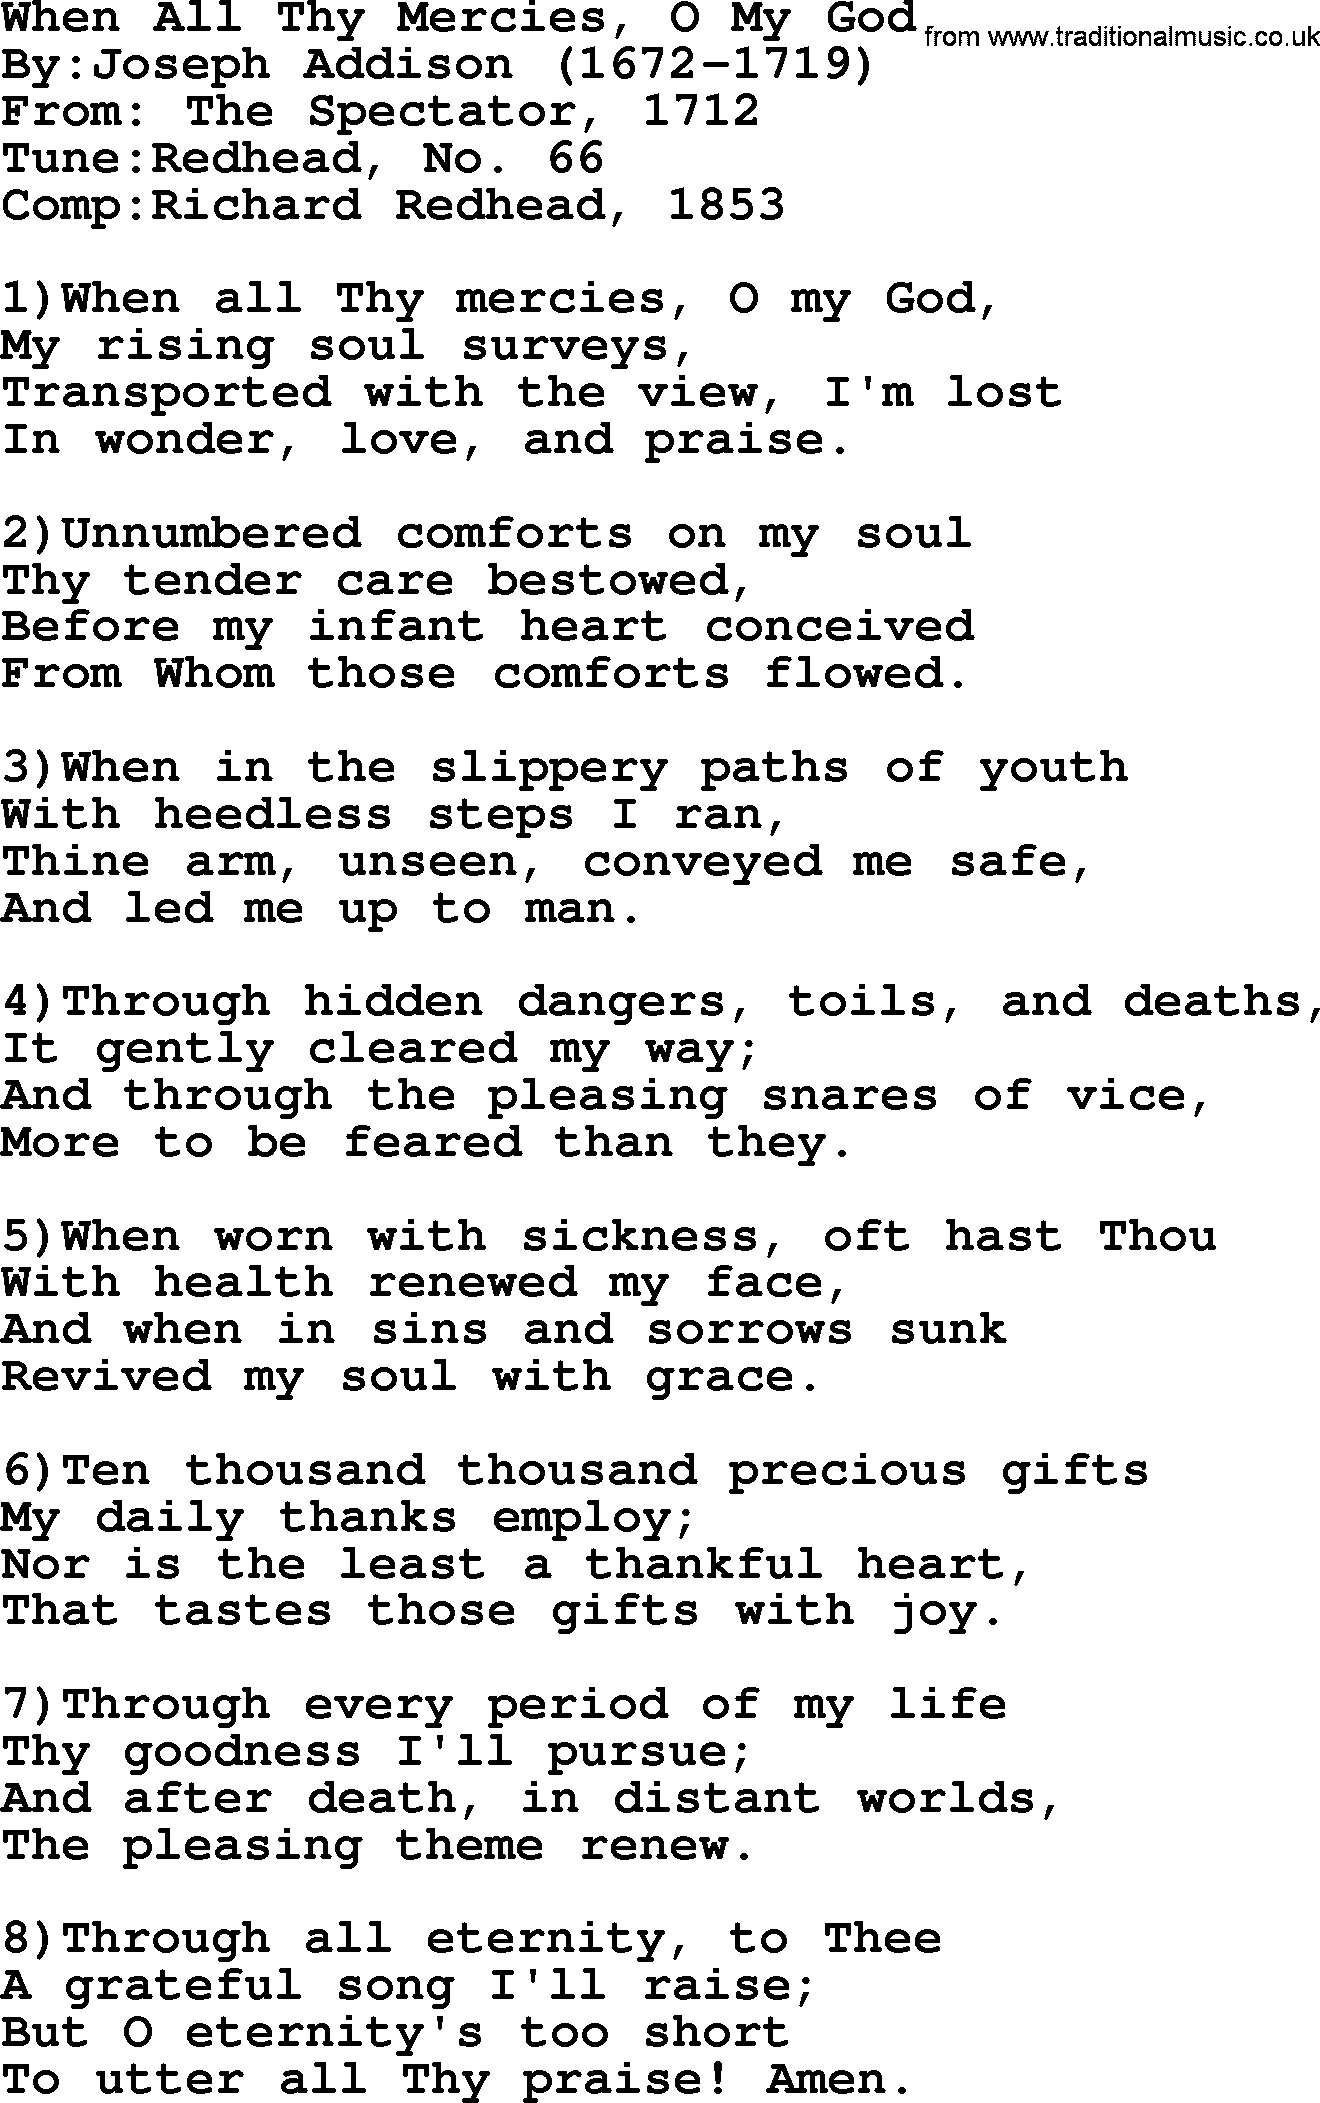 Methodist Hymn: When All Thy Mercies, O My God, lyrics